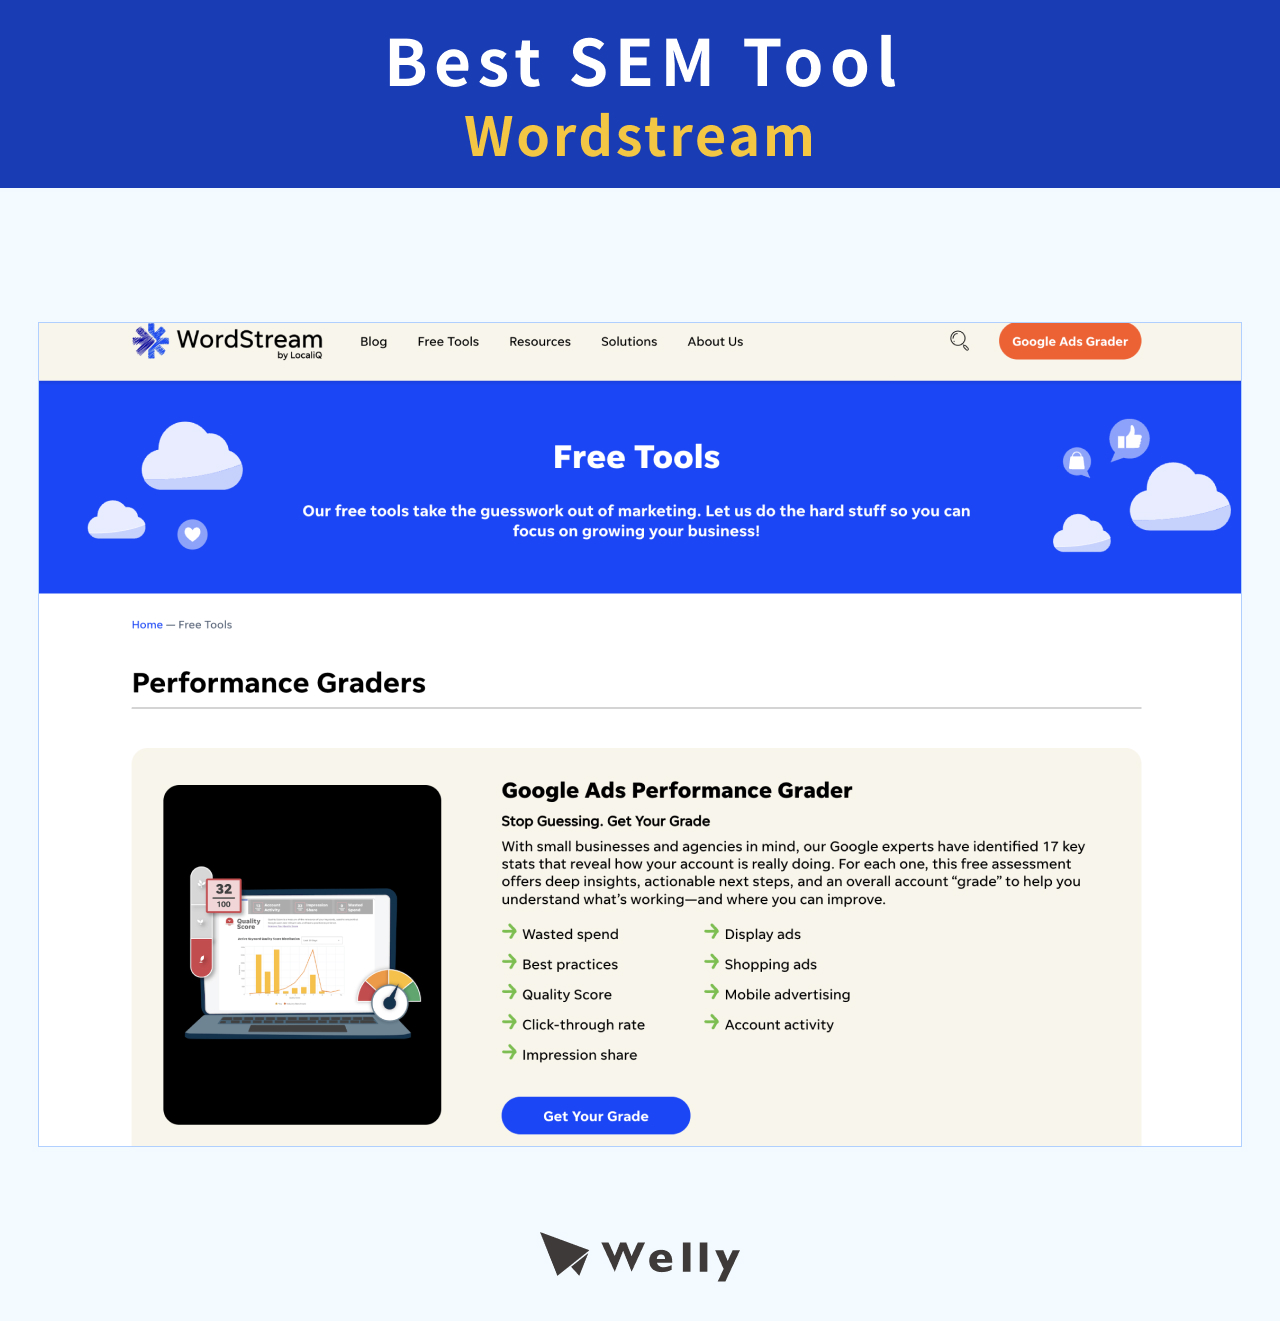 Best SEM Tool: Wordstream